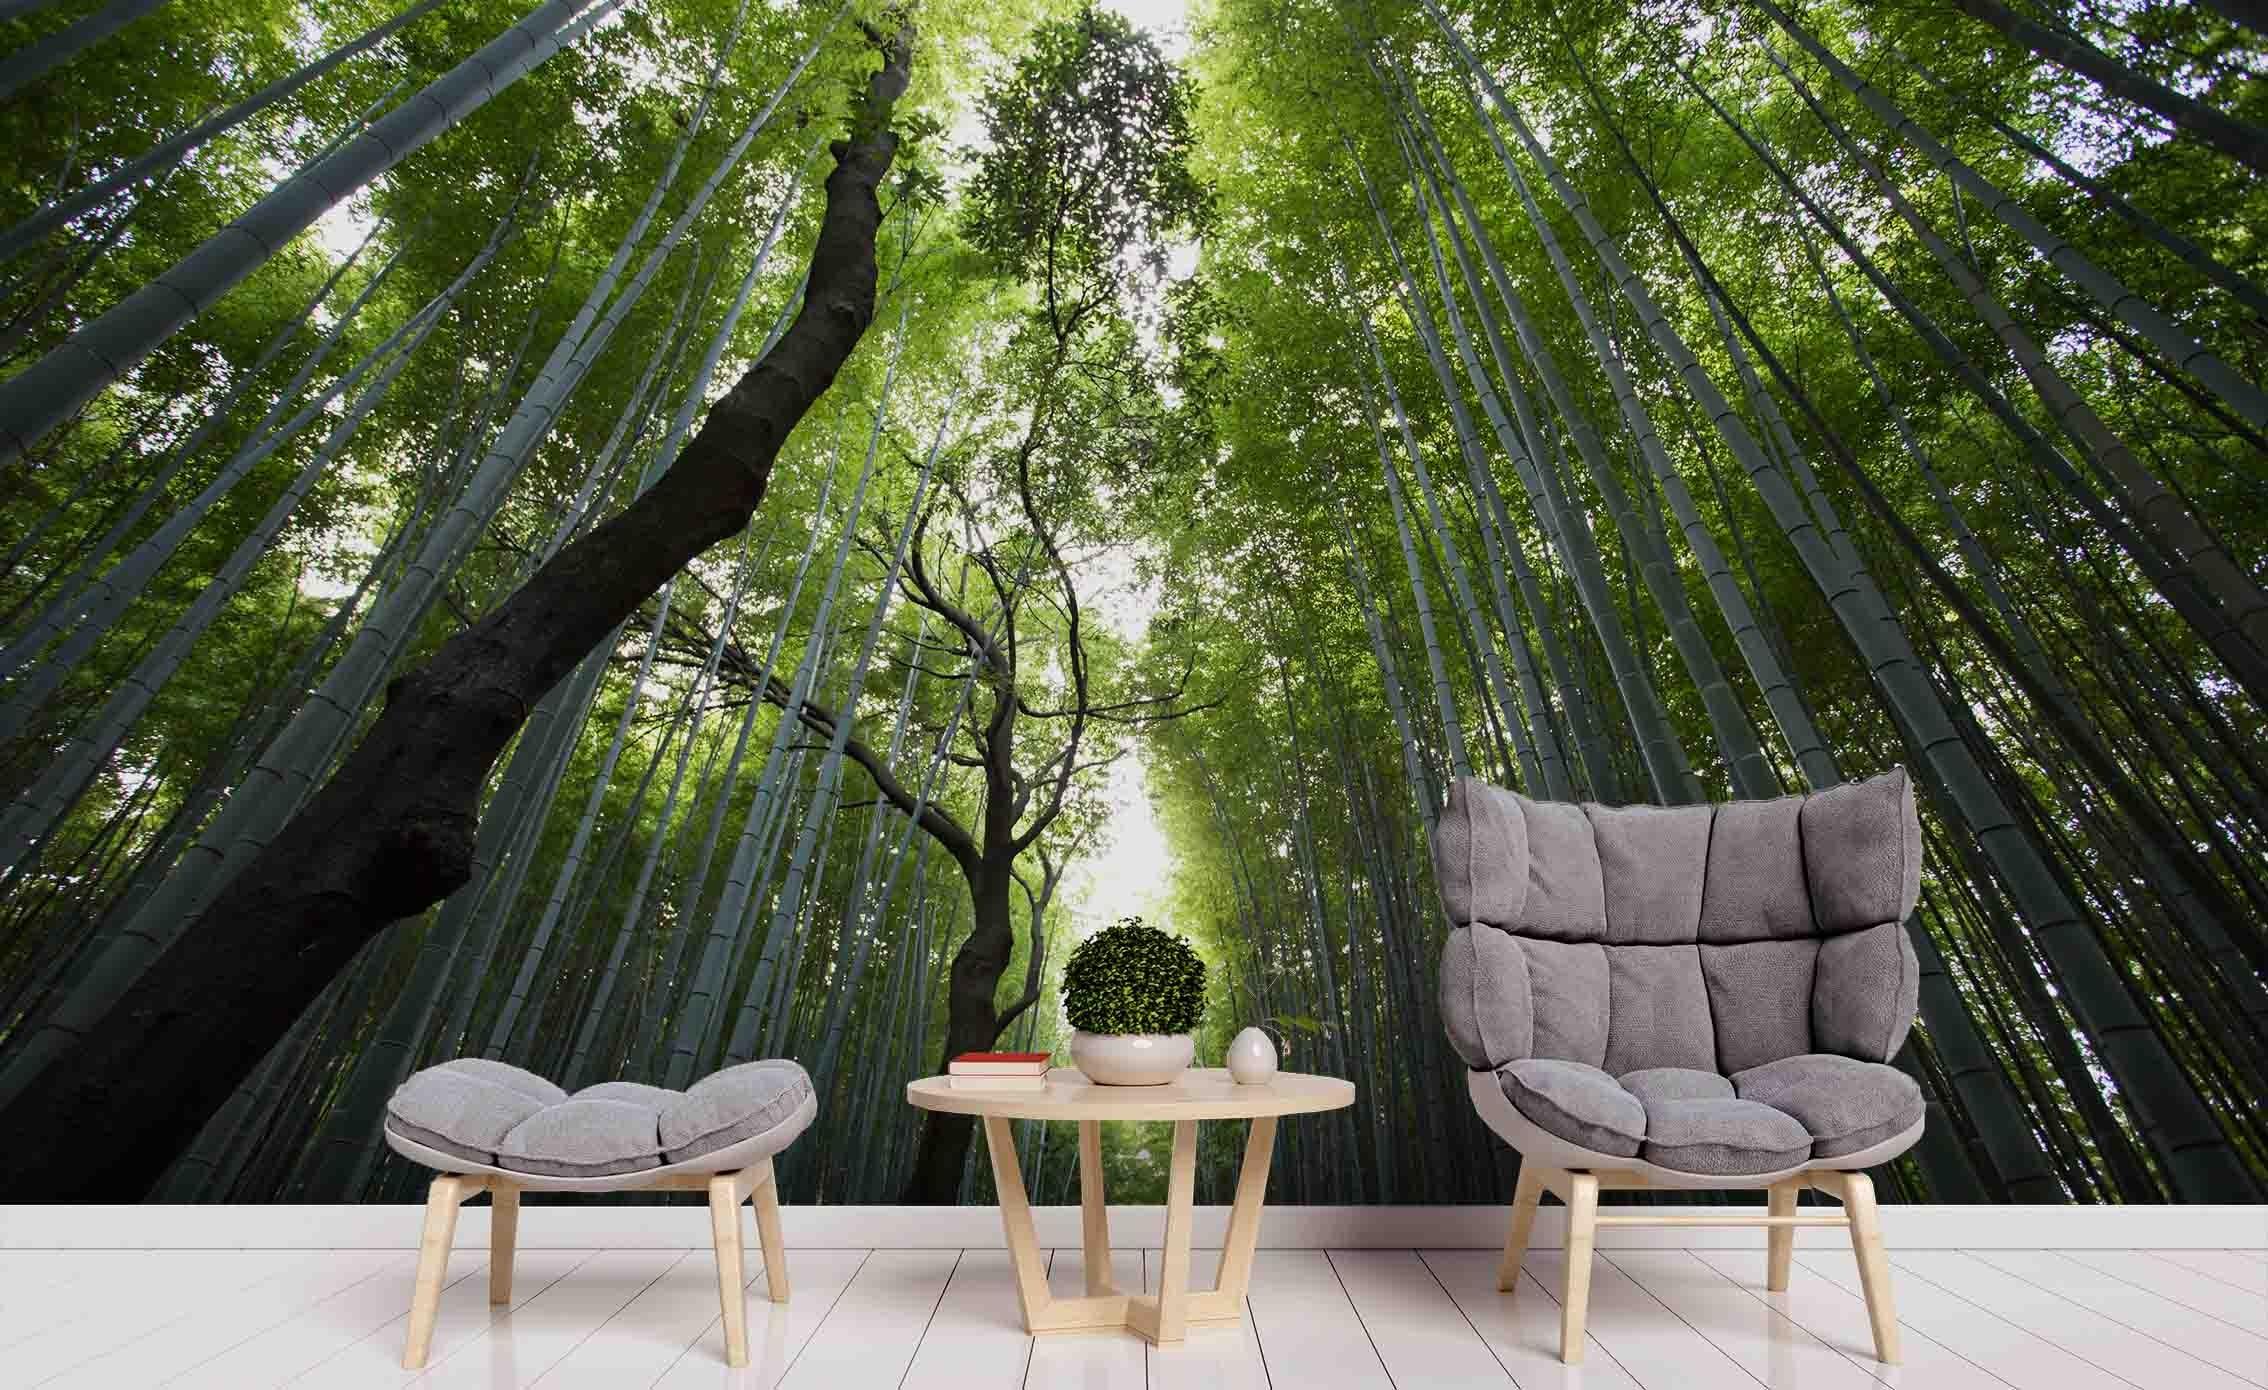 3D Bamboo Forest Wall Mural Wallpa 70- Jess Art Decoration